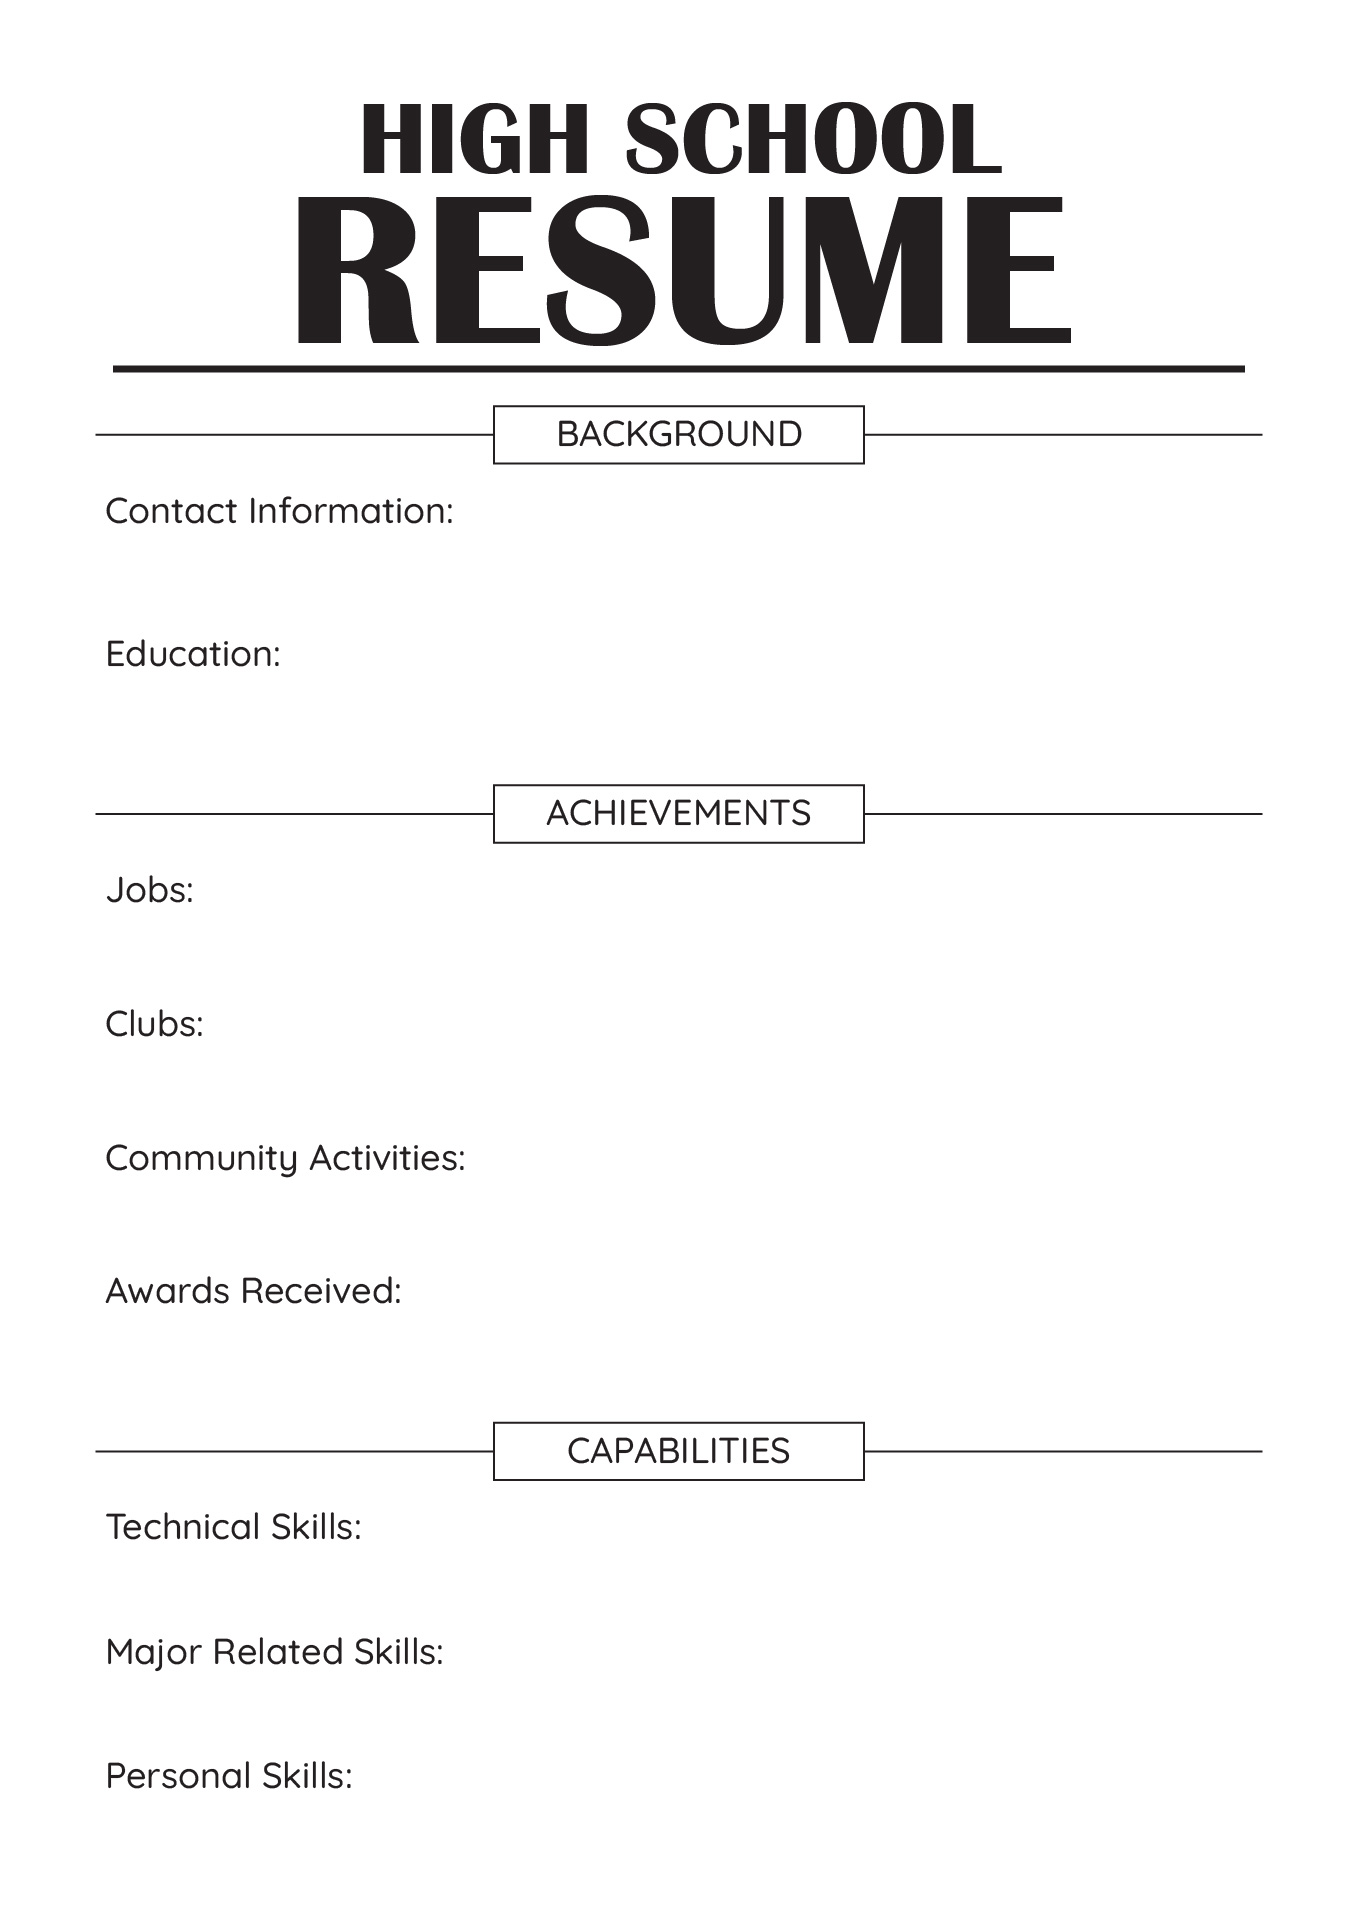 High School Resume Worksheet